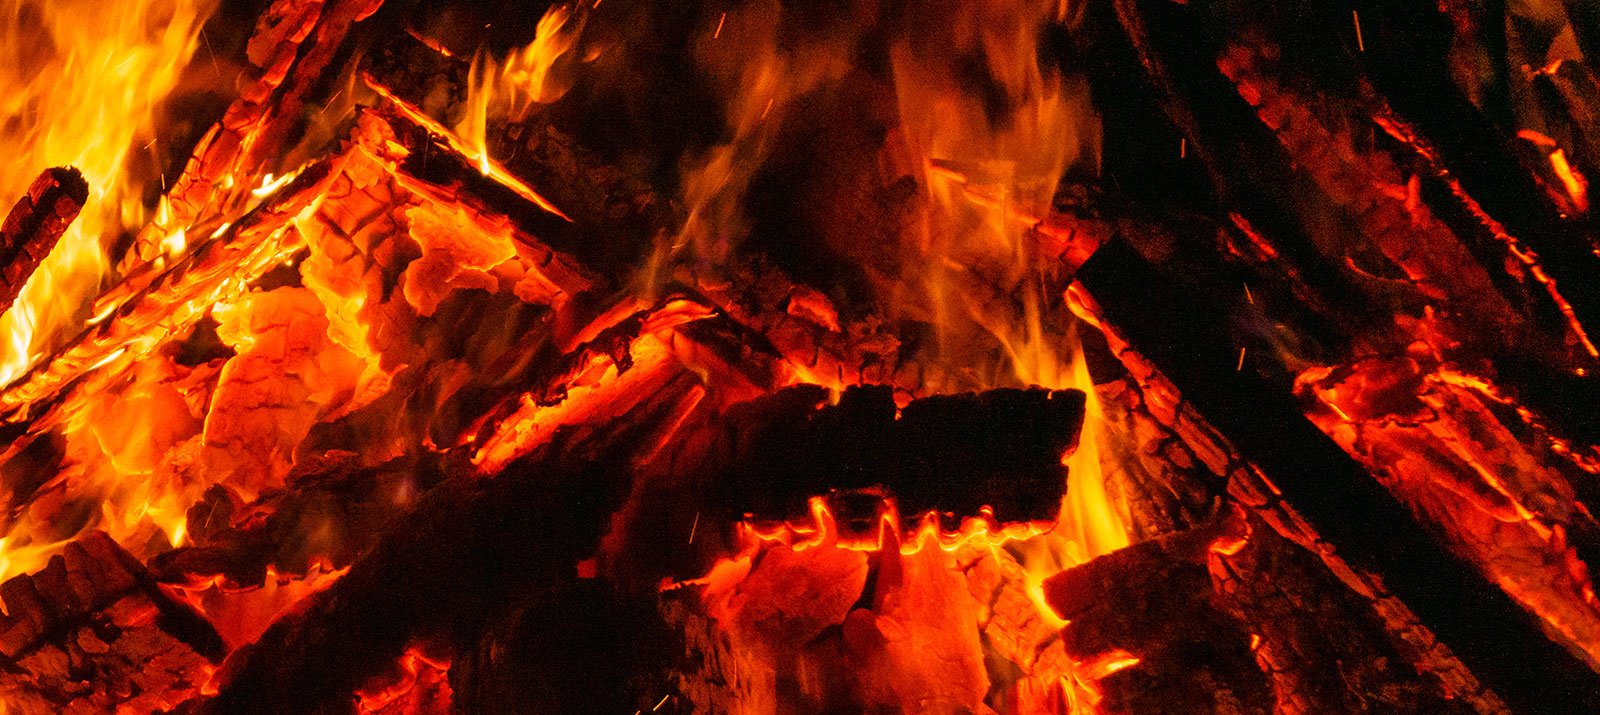 Flames and coals